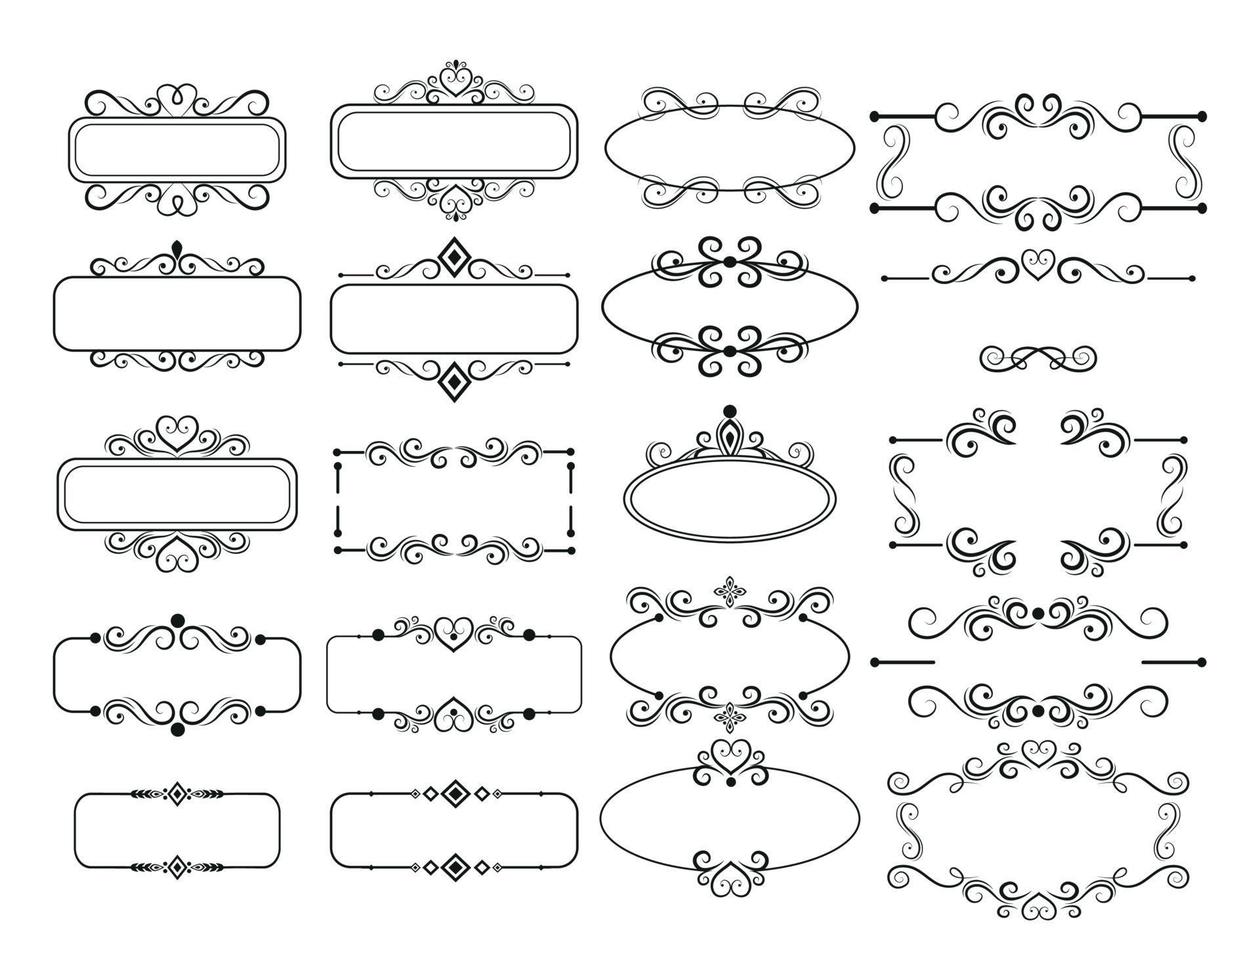 seth assemblaggio di vari elementi degli ornamenti del telaio - vettore